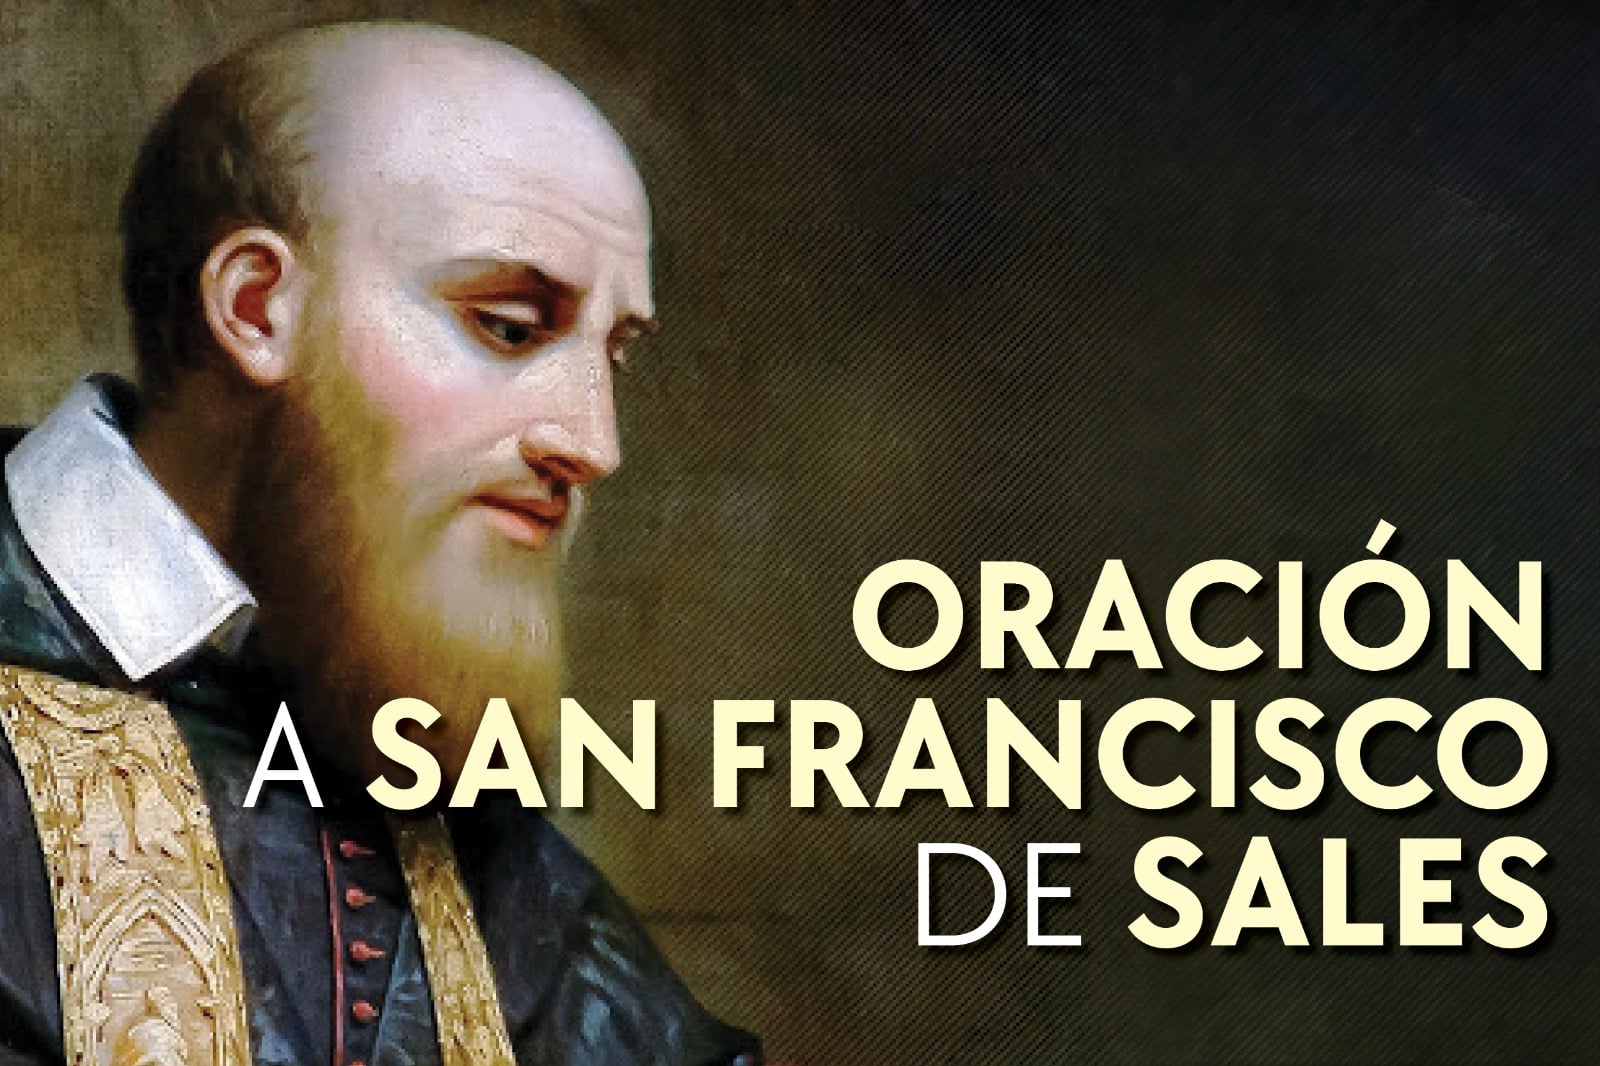 Oración a san Francisco de Sales, patrono de los escritores y periodistas